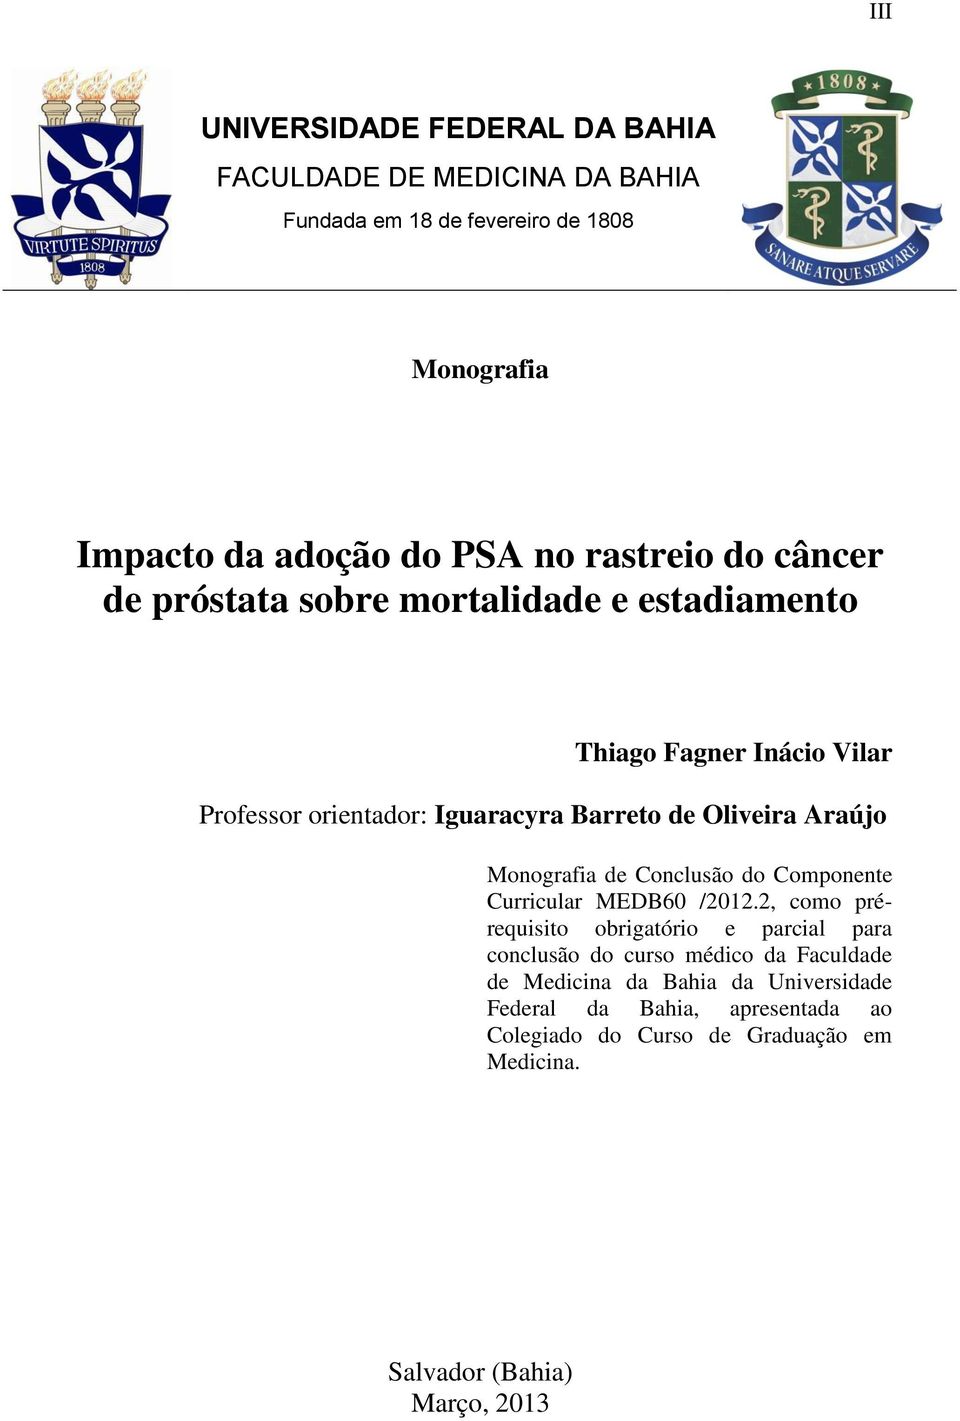 Araújo Monografia de Conclusão do Componente Curricular MEDB60 /2012.